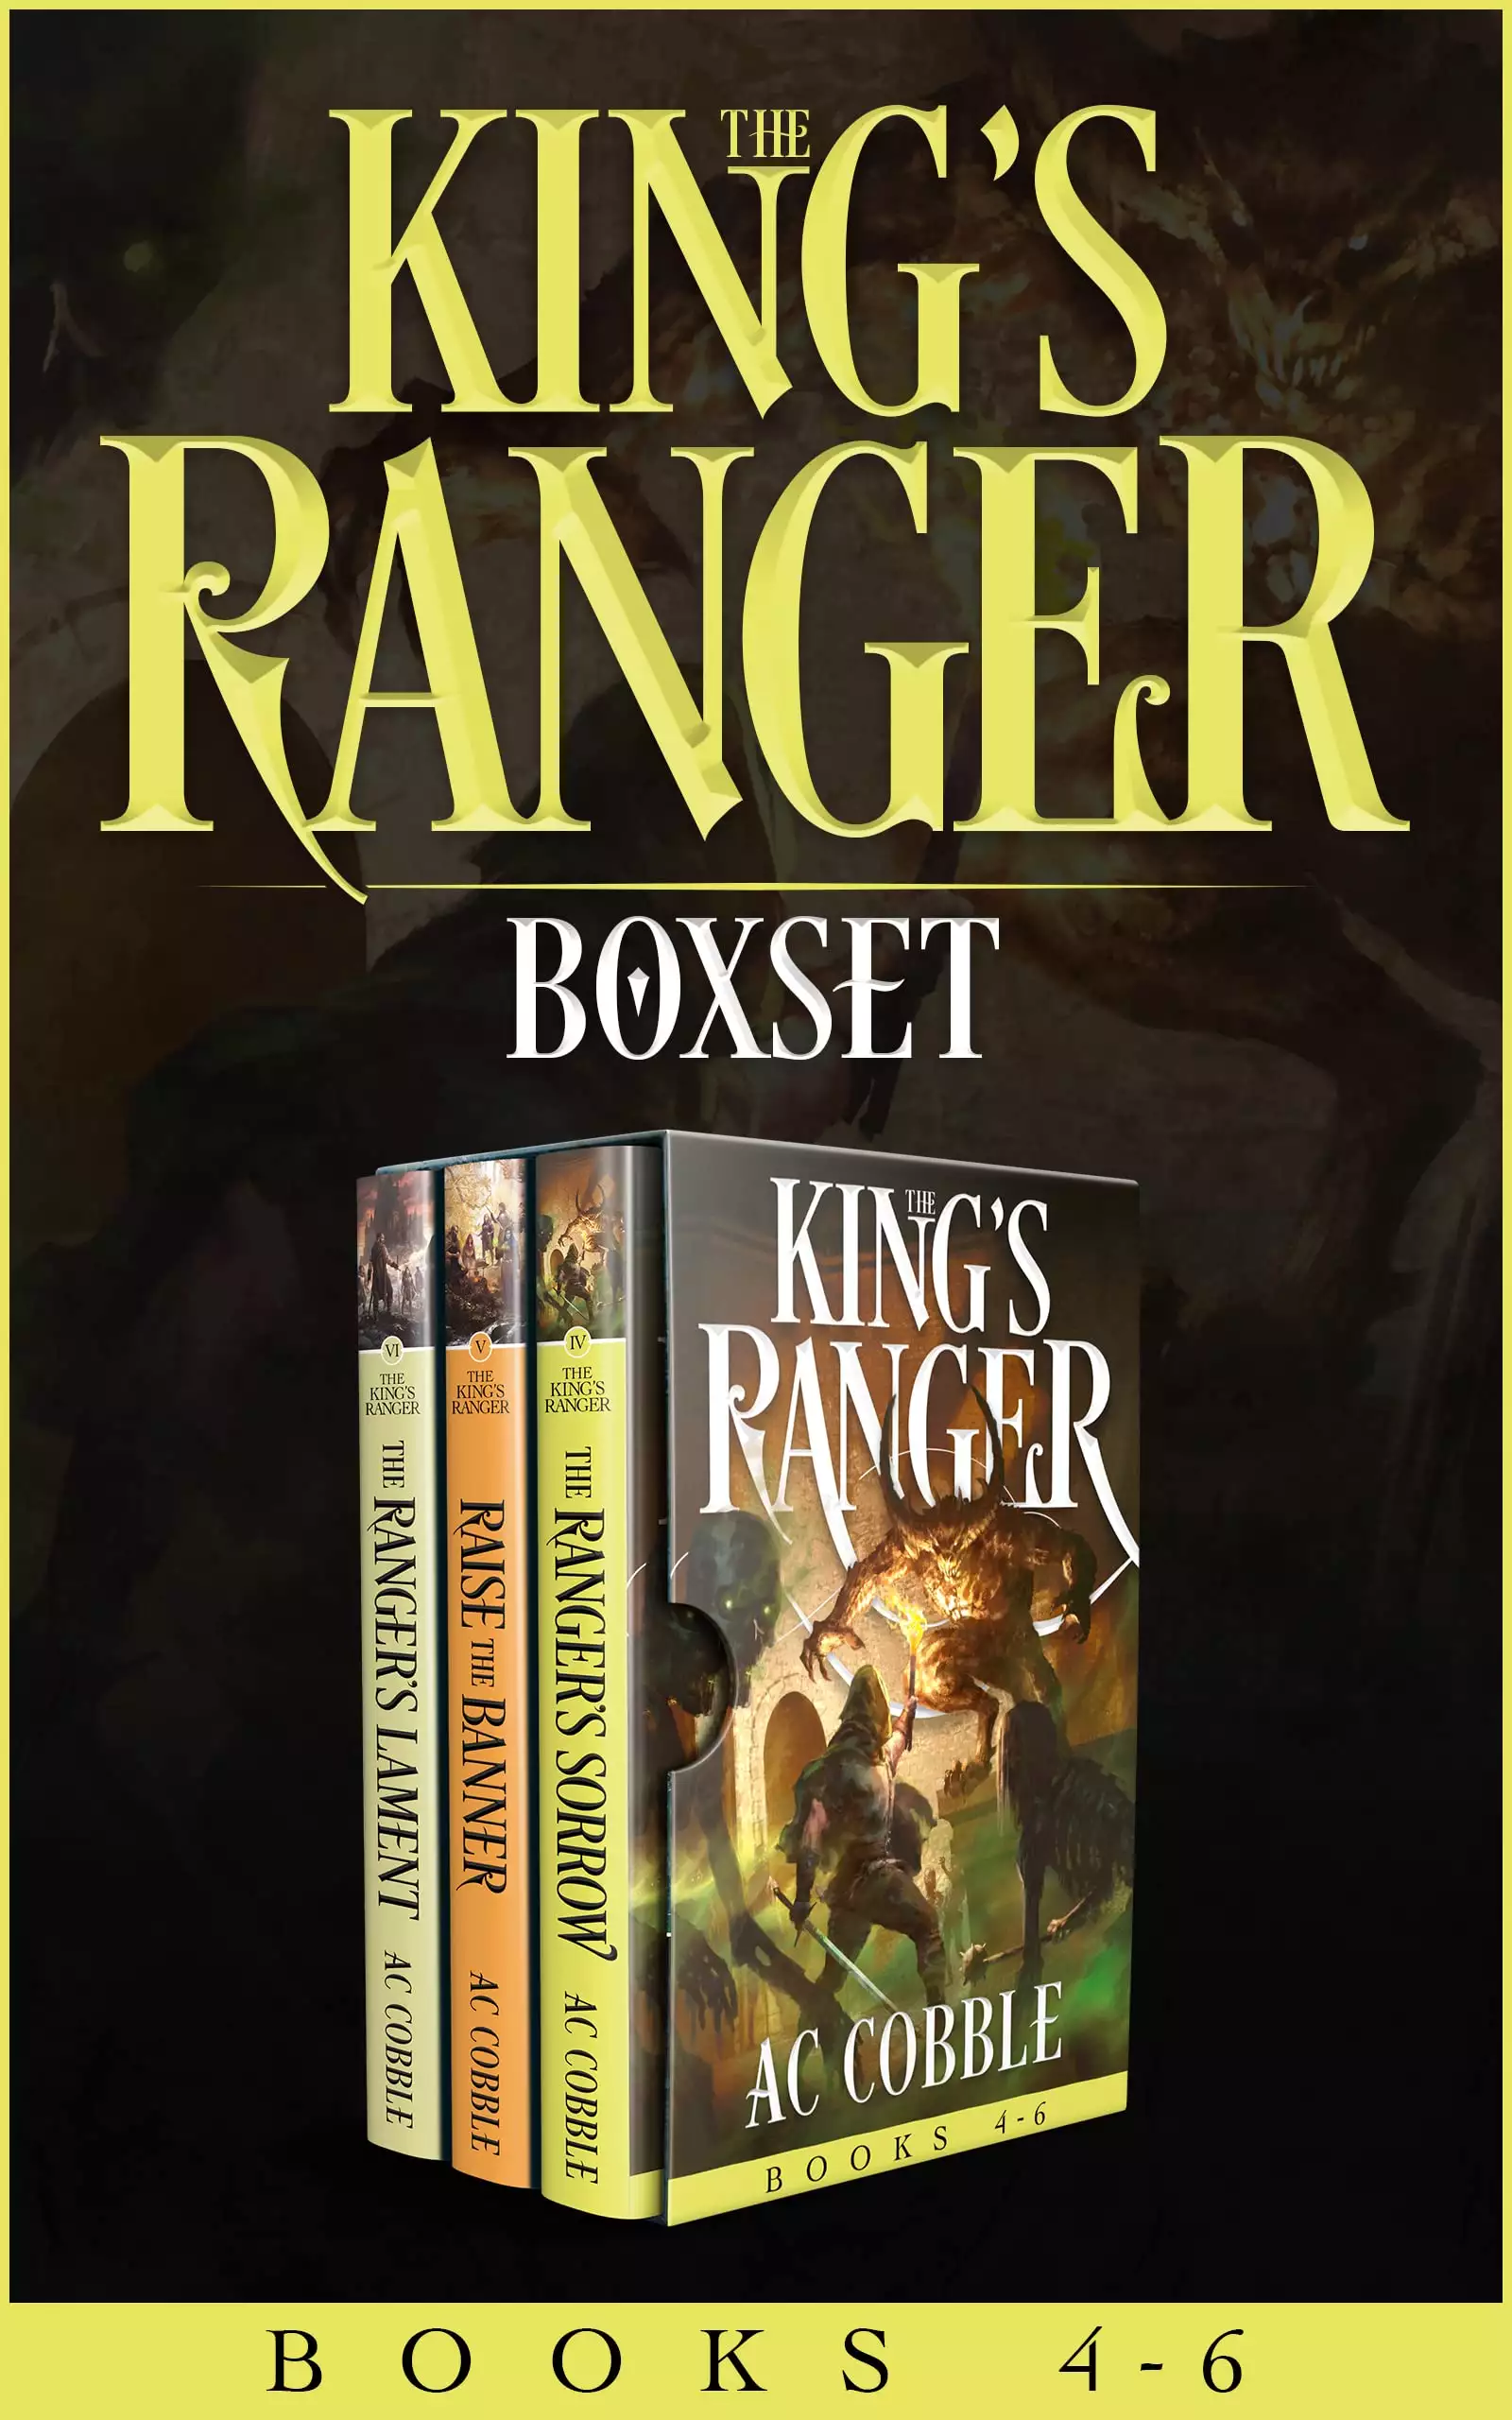 The King's Ranger Boxset: Books 4-6